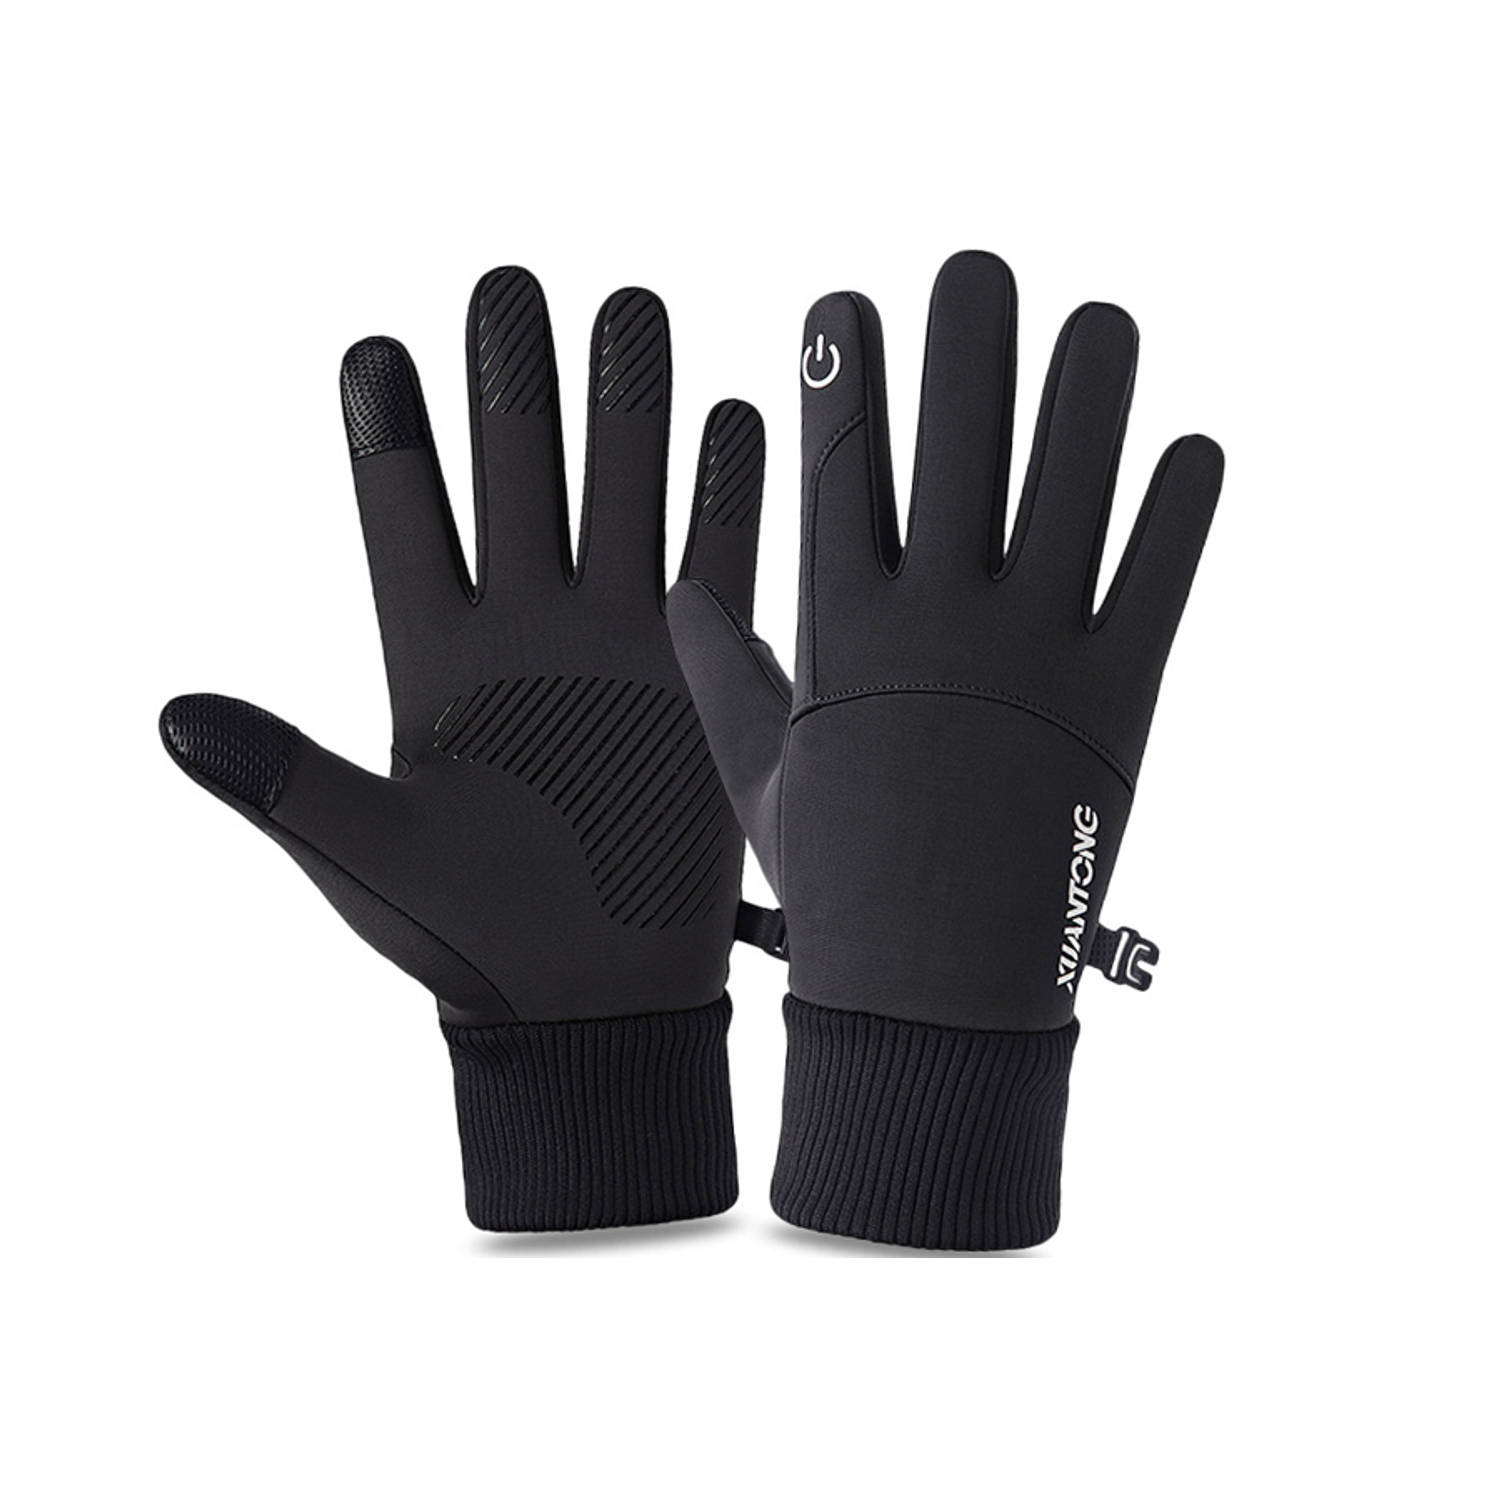 Fleece Handschoenen met Touchscreen bediening – Wind en Waterdicht – Maat L – Zwart